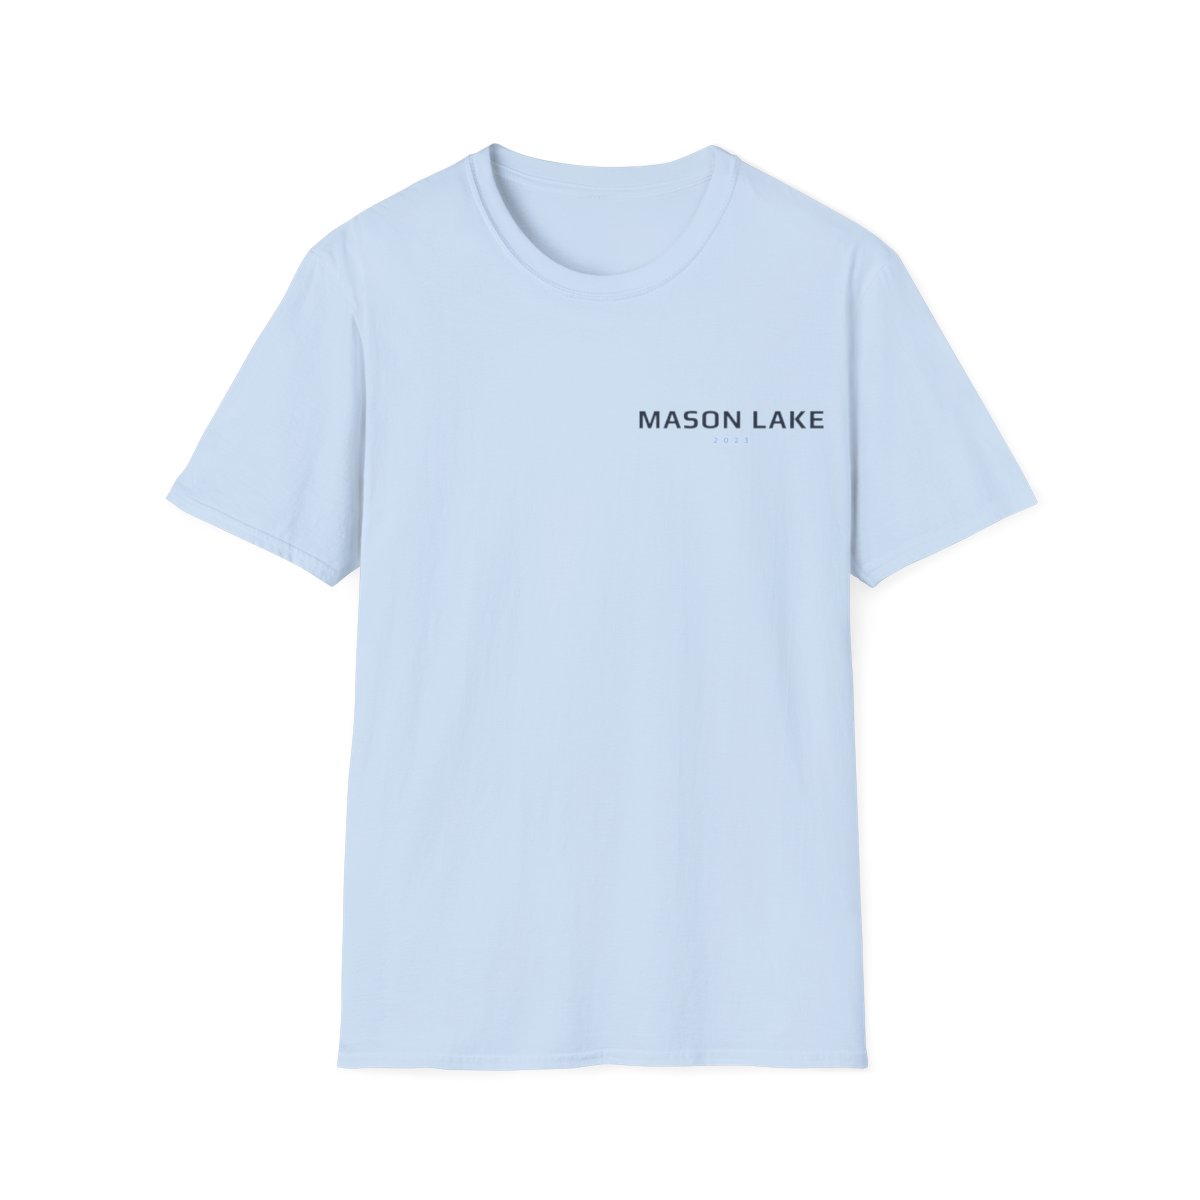 Mason Lake Wakeboarder Shirt product main image